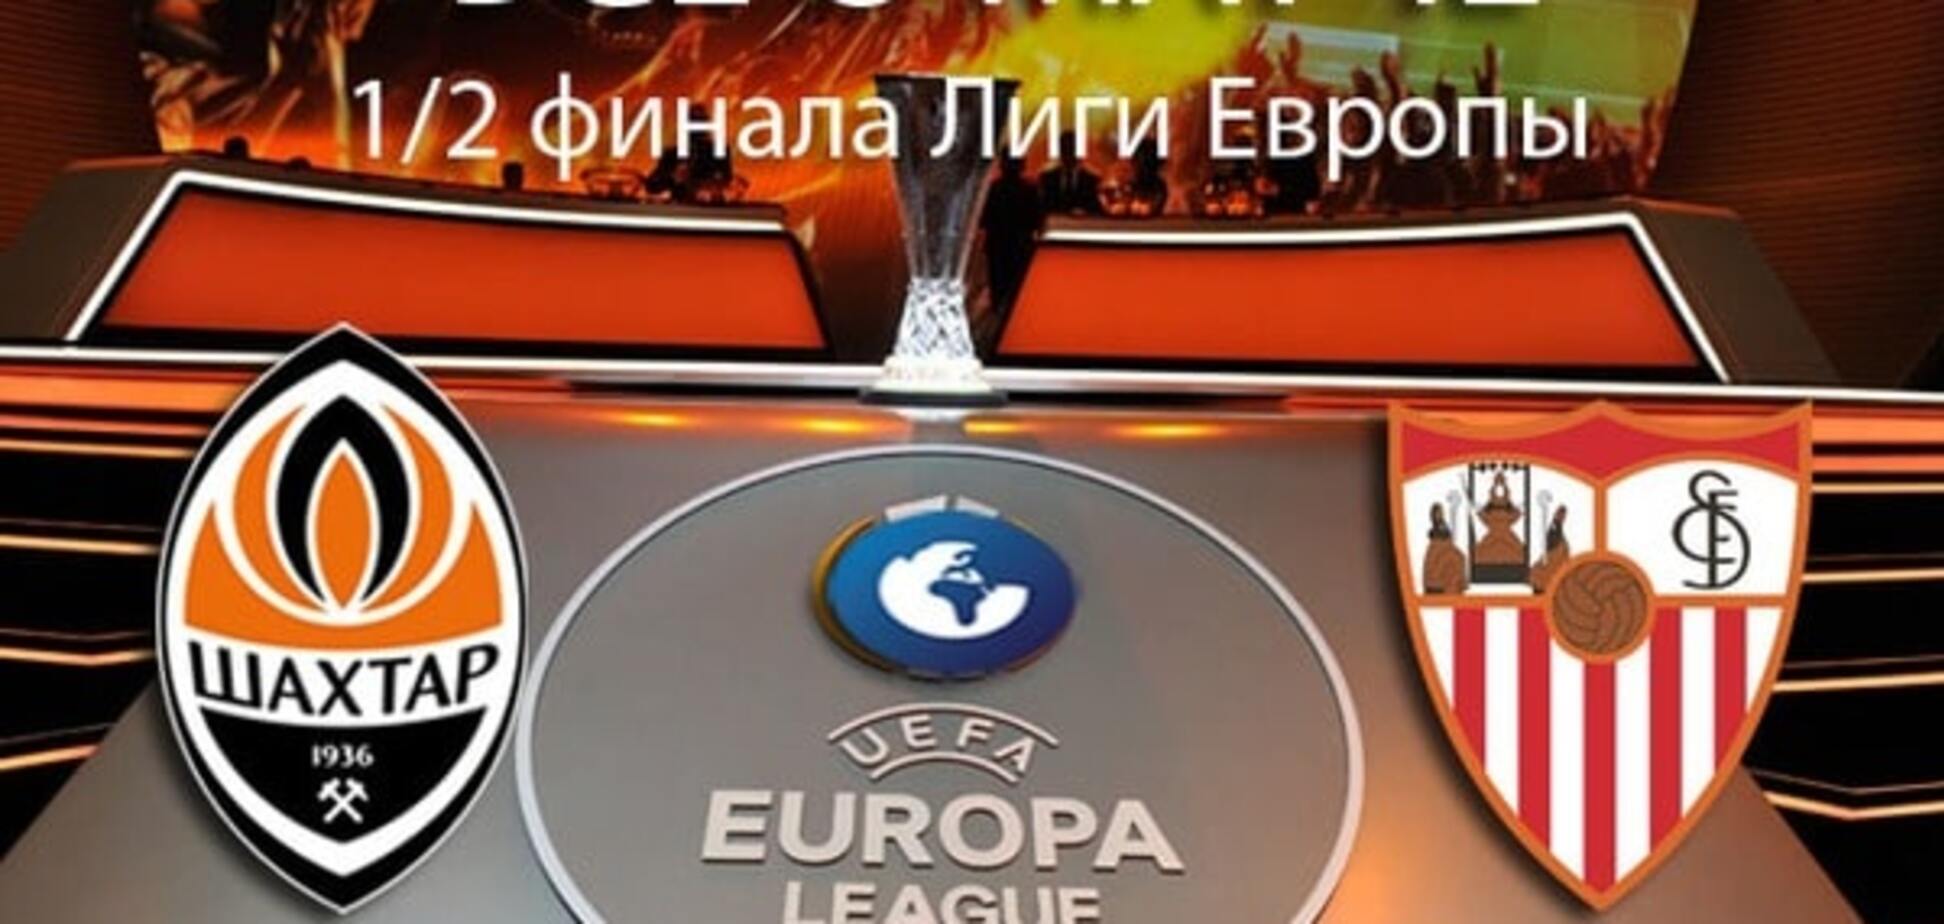 'Шахтар' - 'Севілья': анонс, прогноз, де дивитися матч 1/2 фіналу Ліги Європи